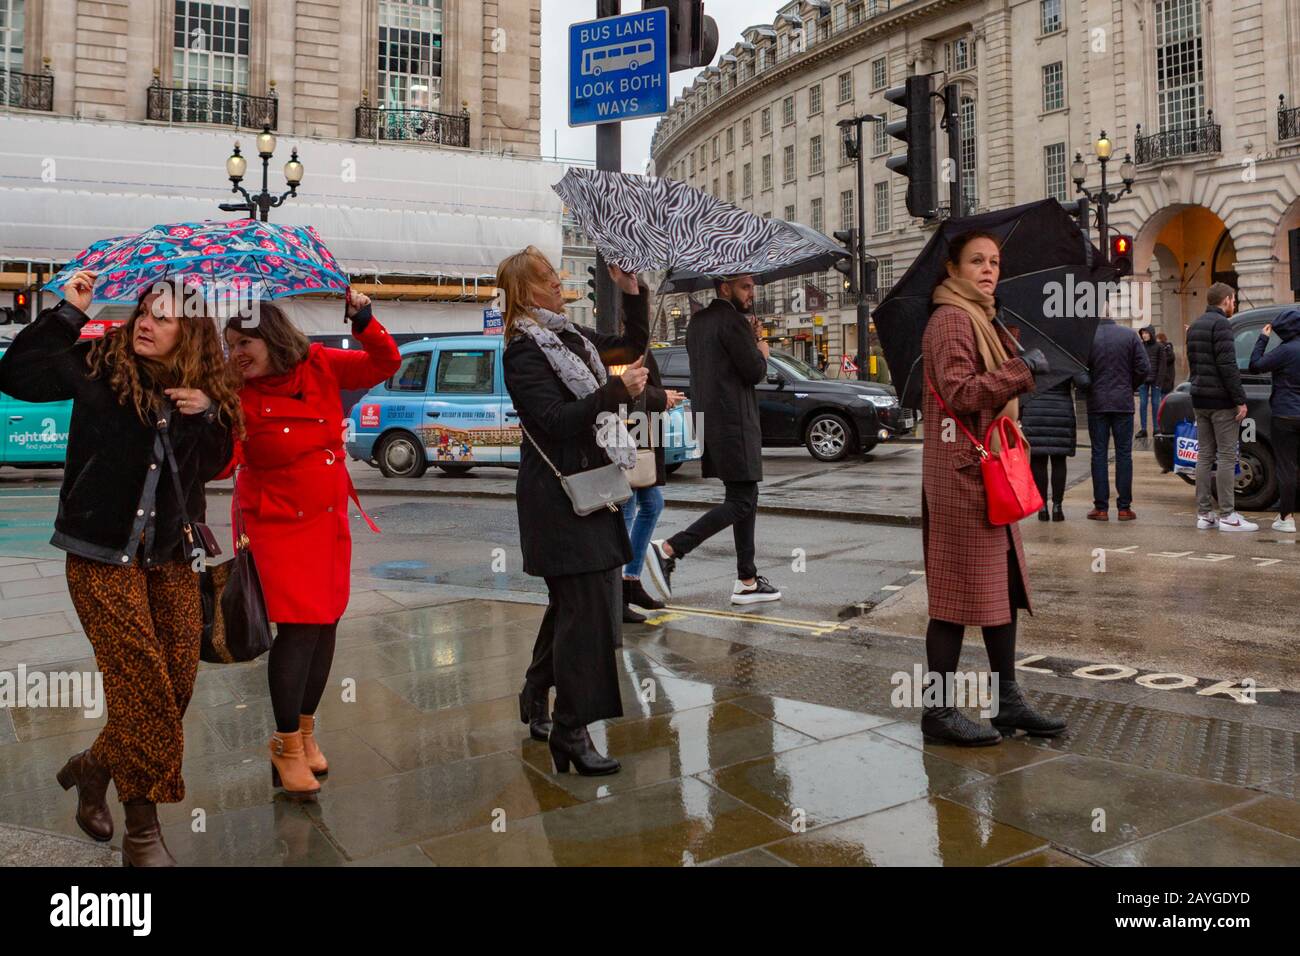 Londres, Royaume-Uni. 15 février 2020. Piccadilly Circus. Pluie et vent croissant dans le centre de Londres, avant l'arrivée de la tempête Denis. Penelope Barritt/Alay Live News Banque D'Images